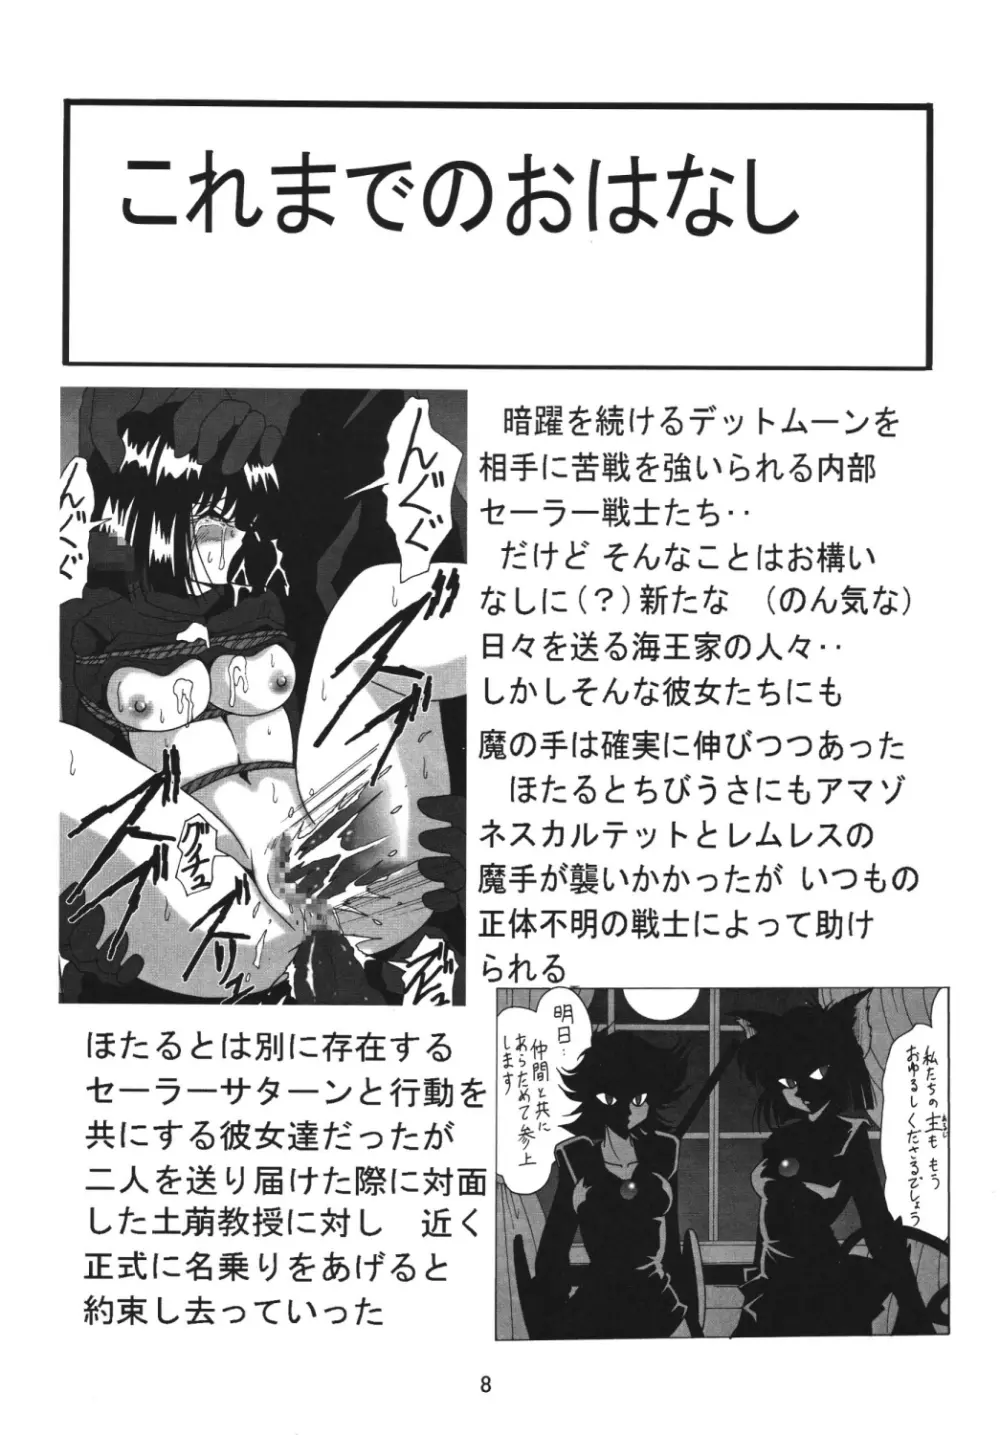 サイレント・サターン SS vol.7 - page7